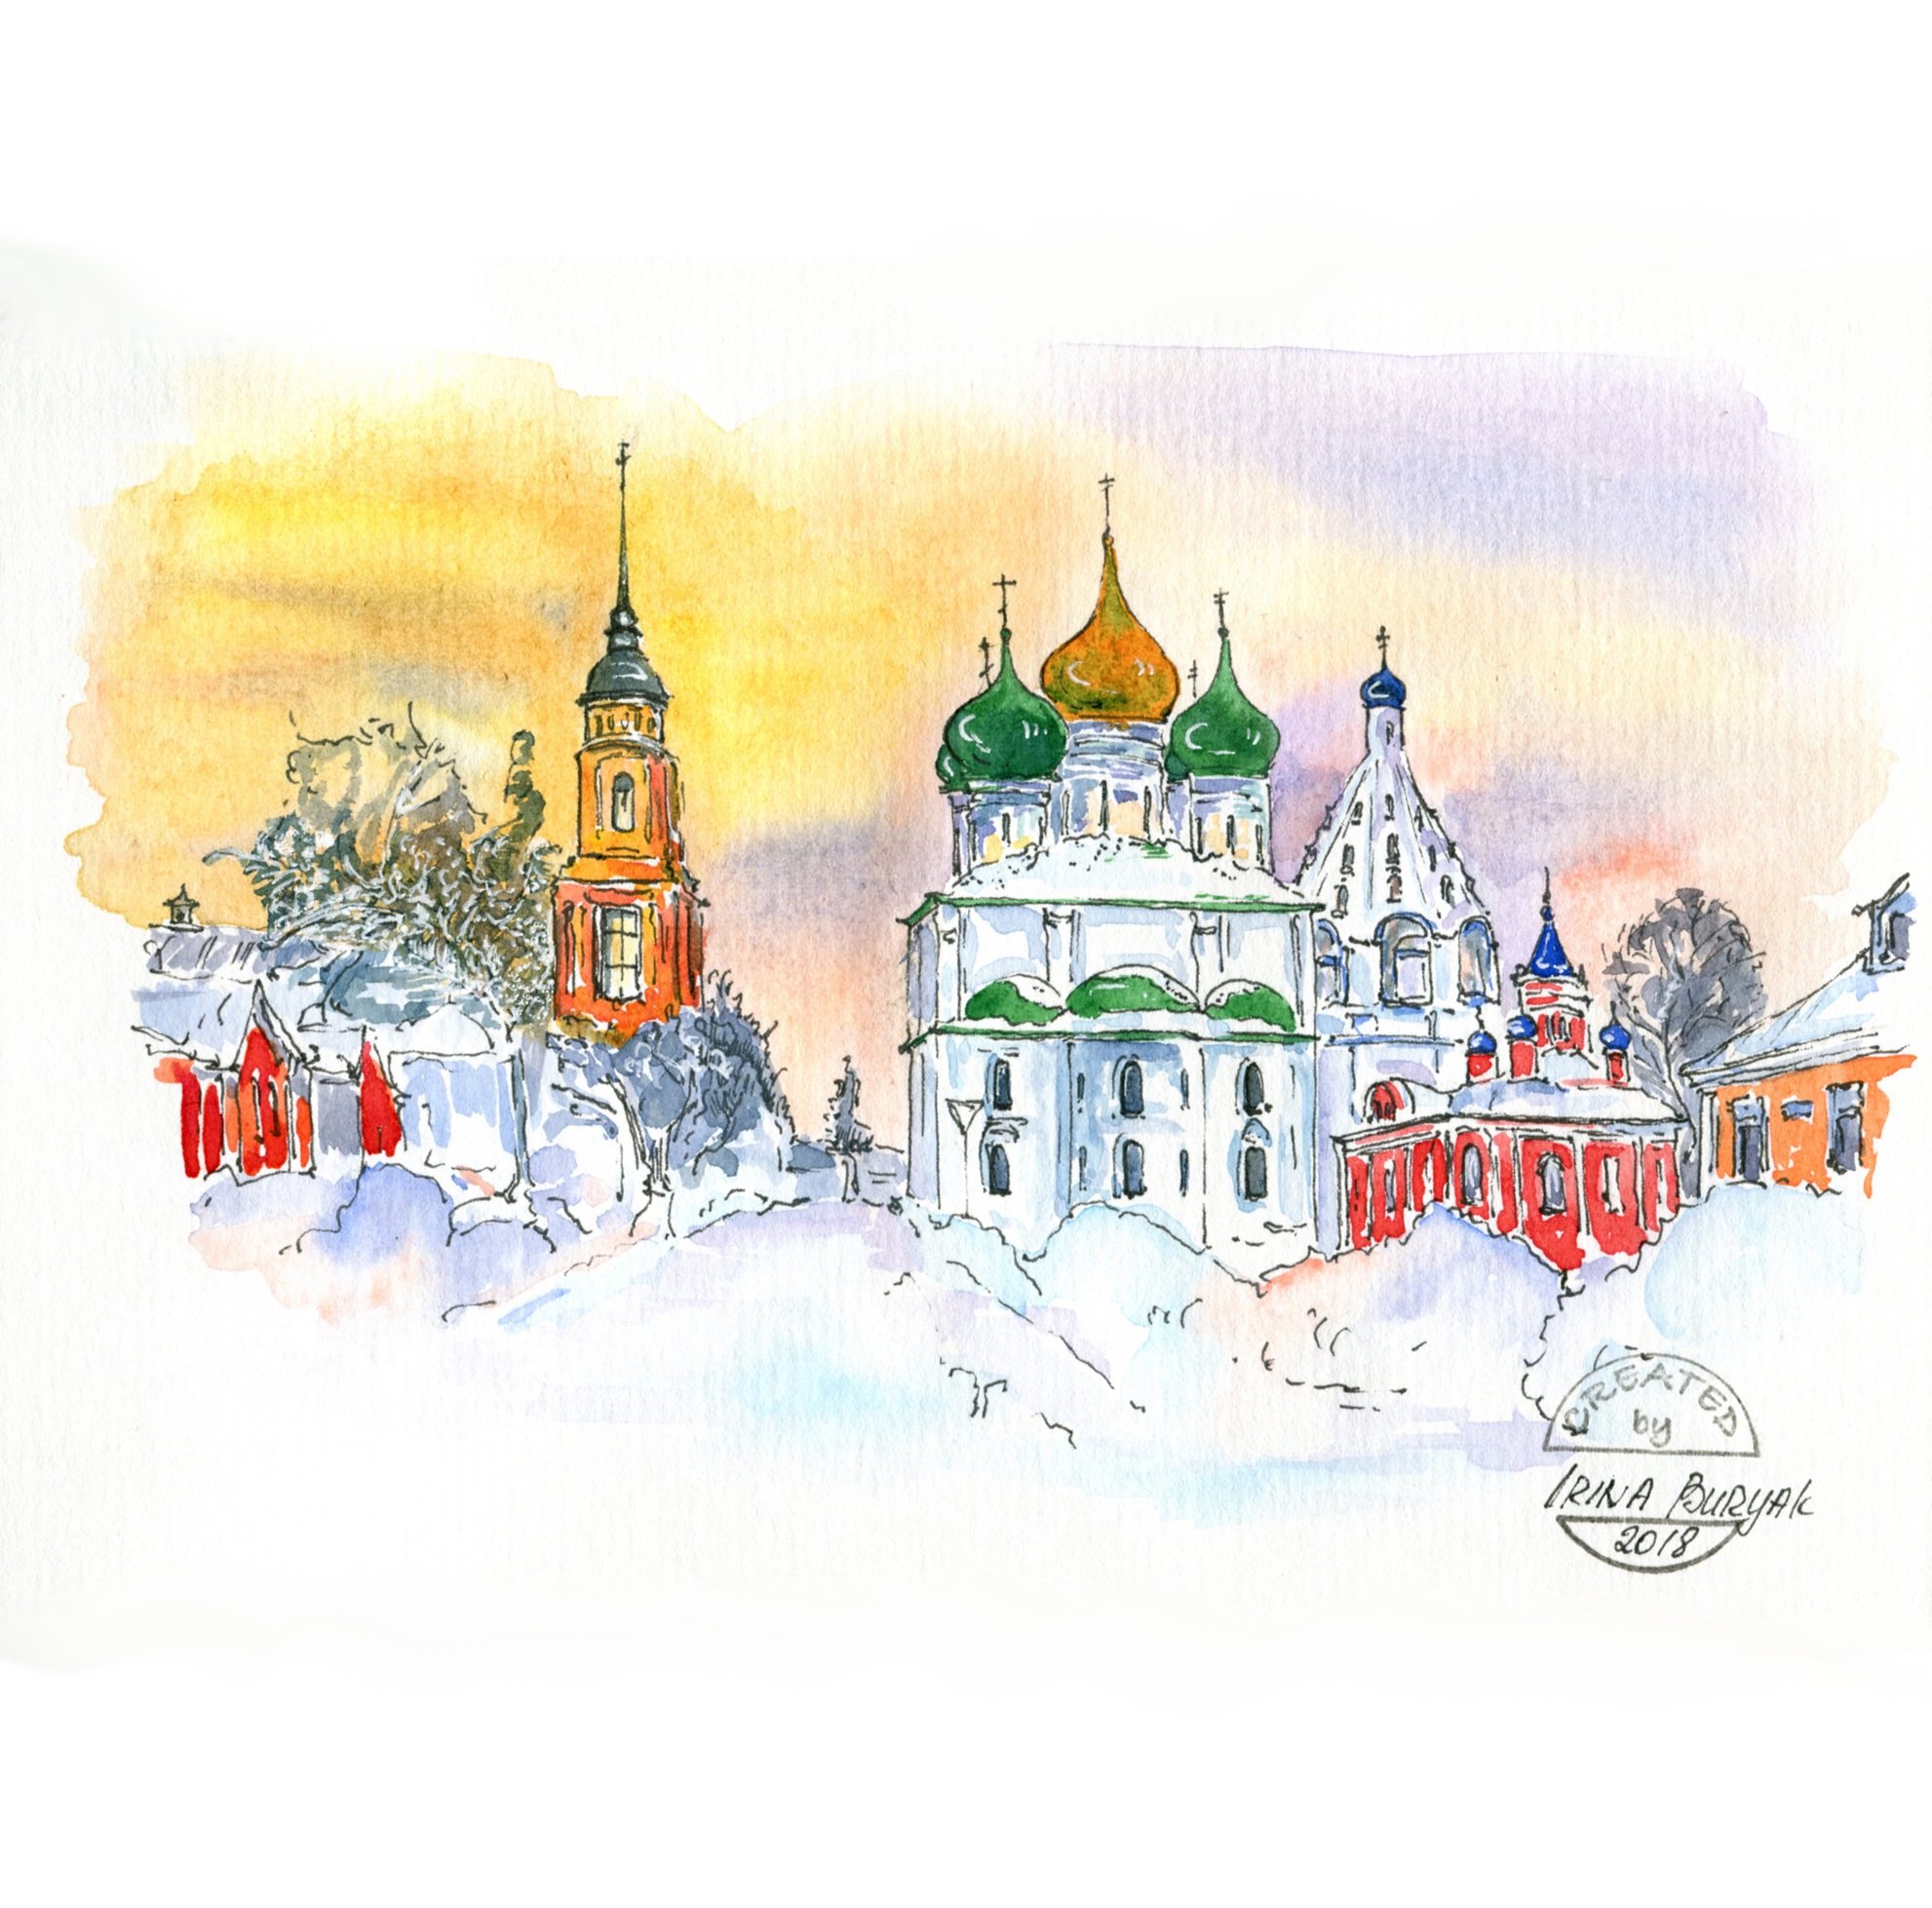 Коломенский Кремль зимой